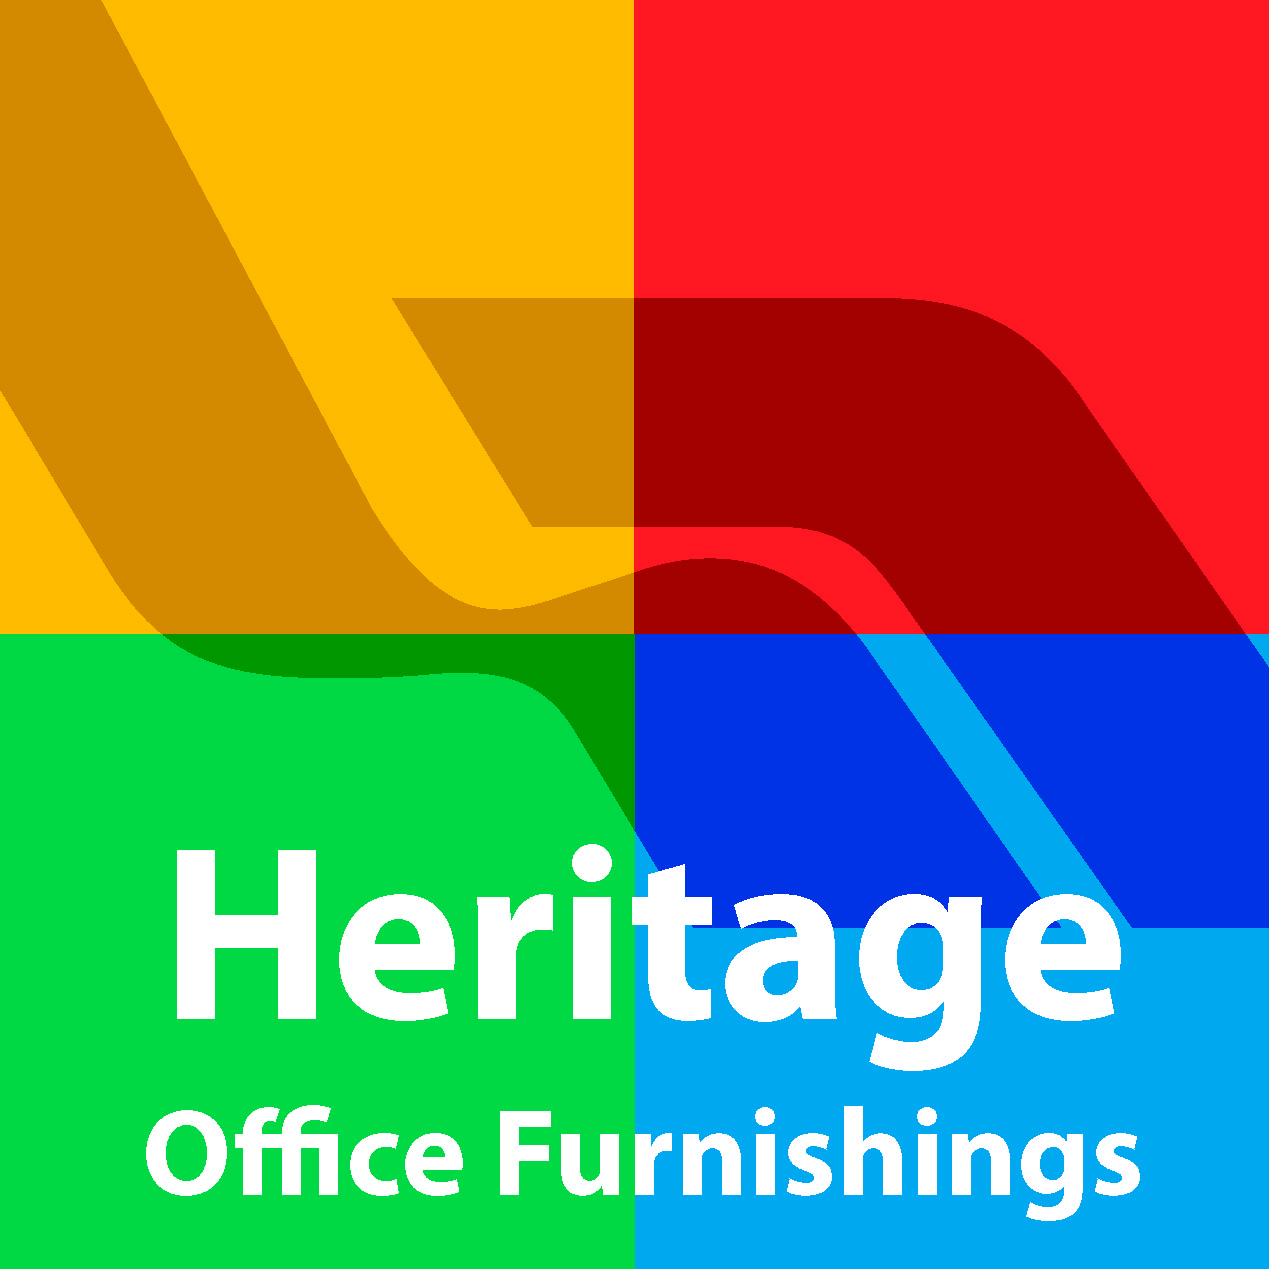 Heritage Office Furnishings Ltd.